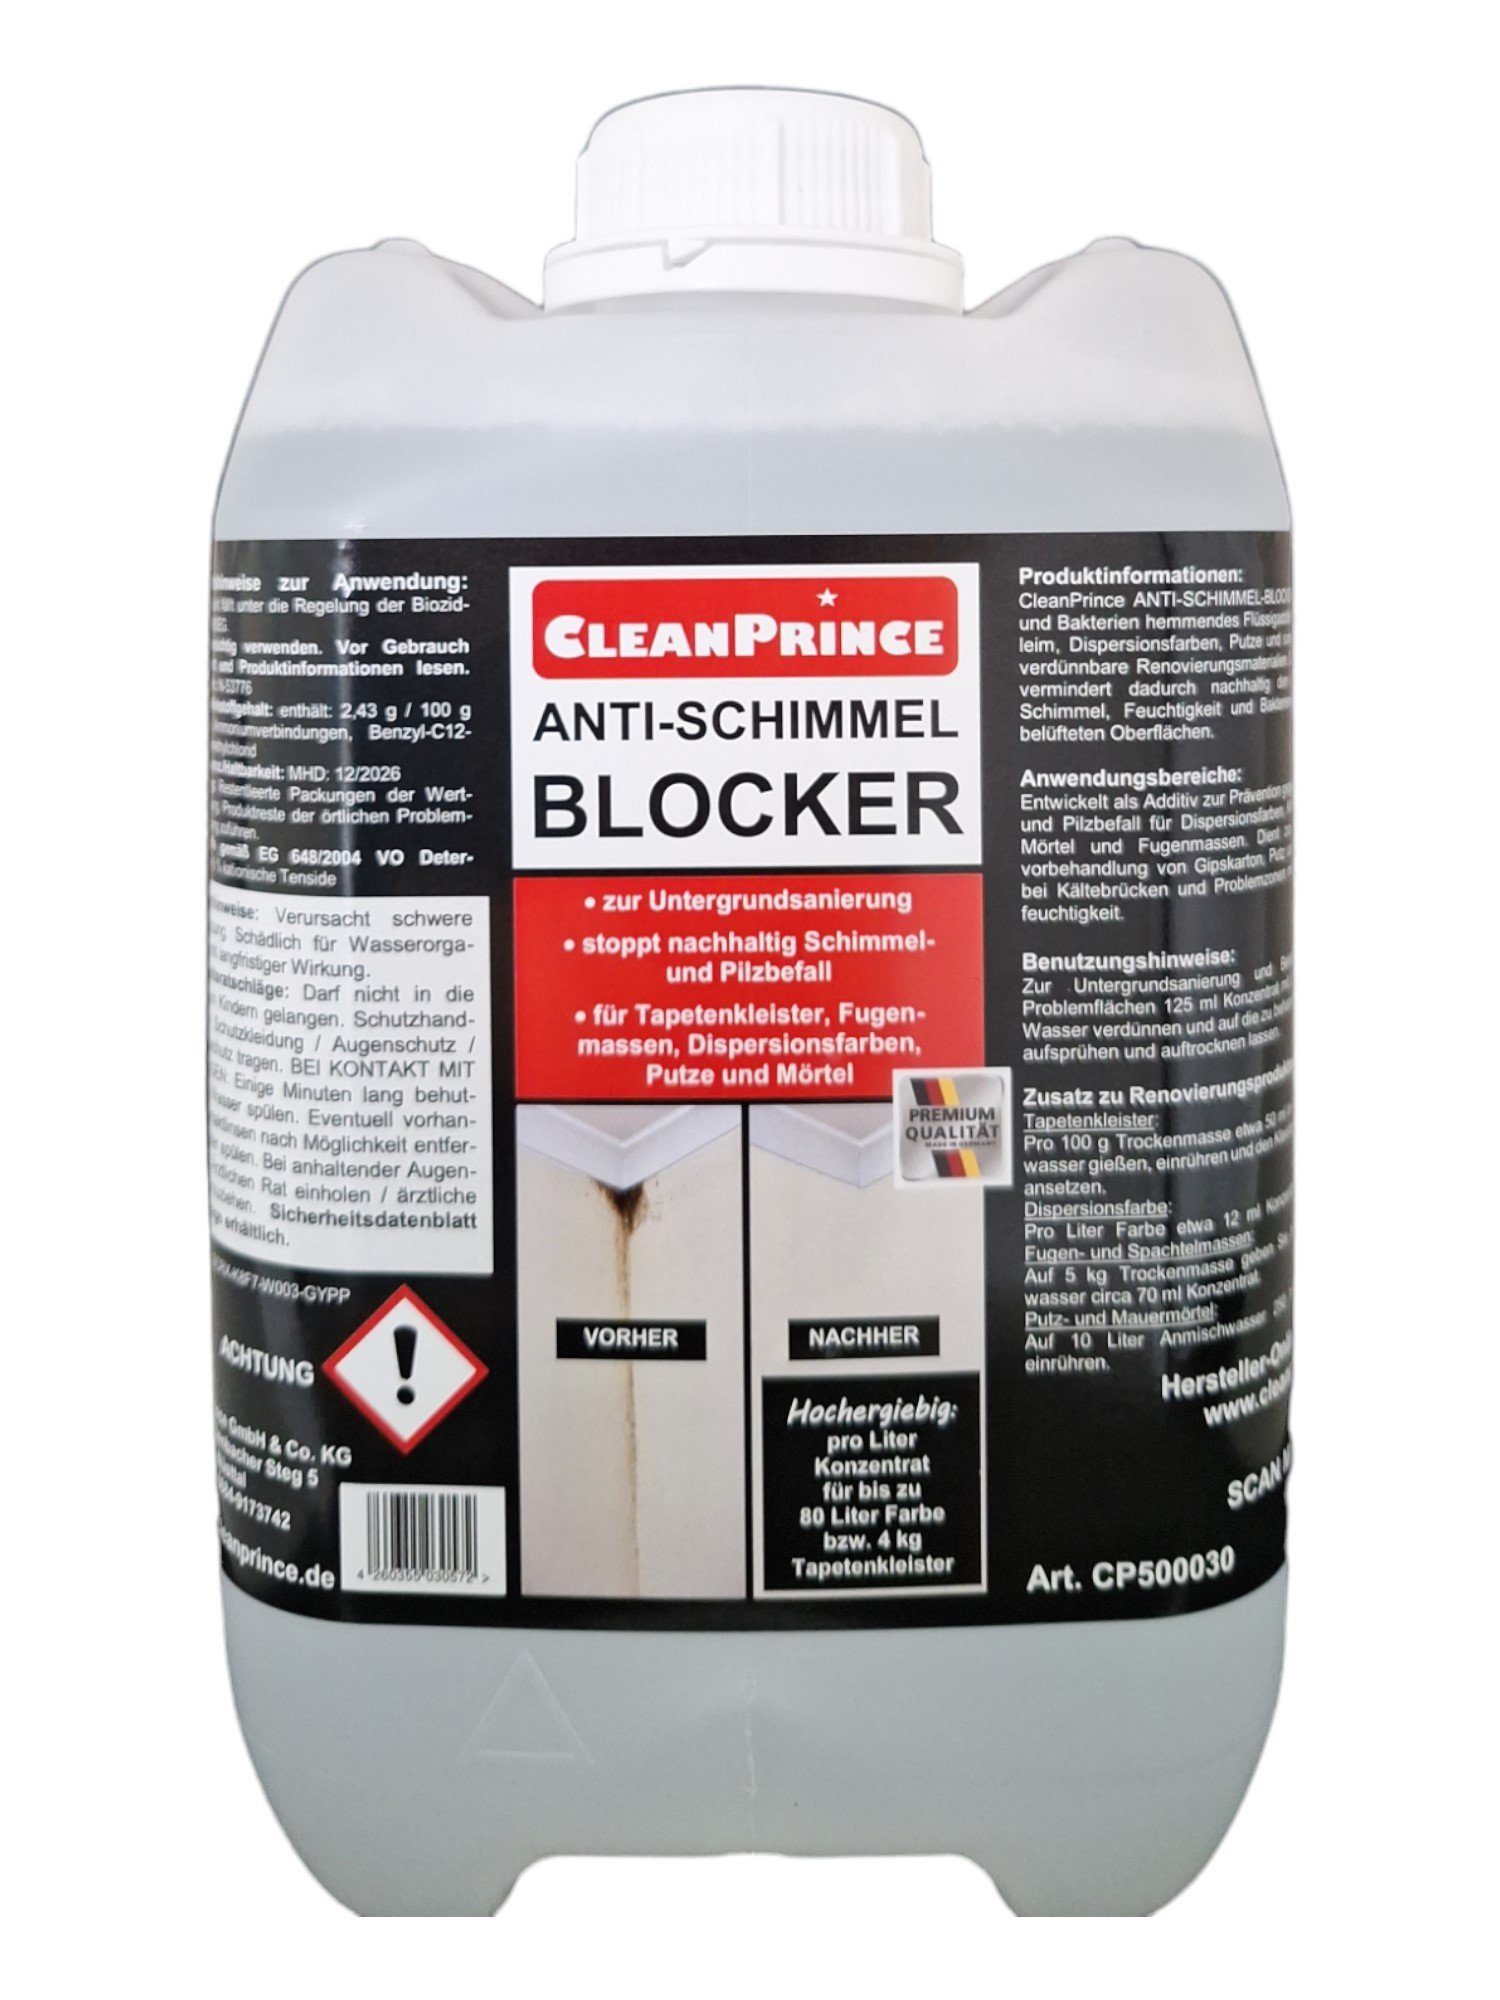 CleanPrince Anti-Schimmel-Blocker, Zusatz in Farbe oder Leim, Schimmelschutz Schimmelentferner (pilz- und bakterienhemmendes Flüssigadditiv)